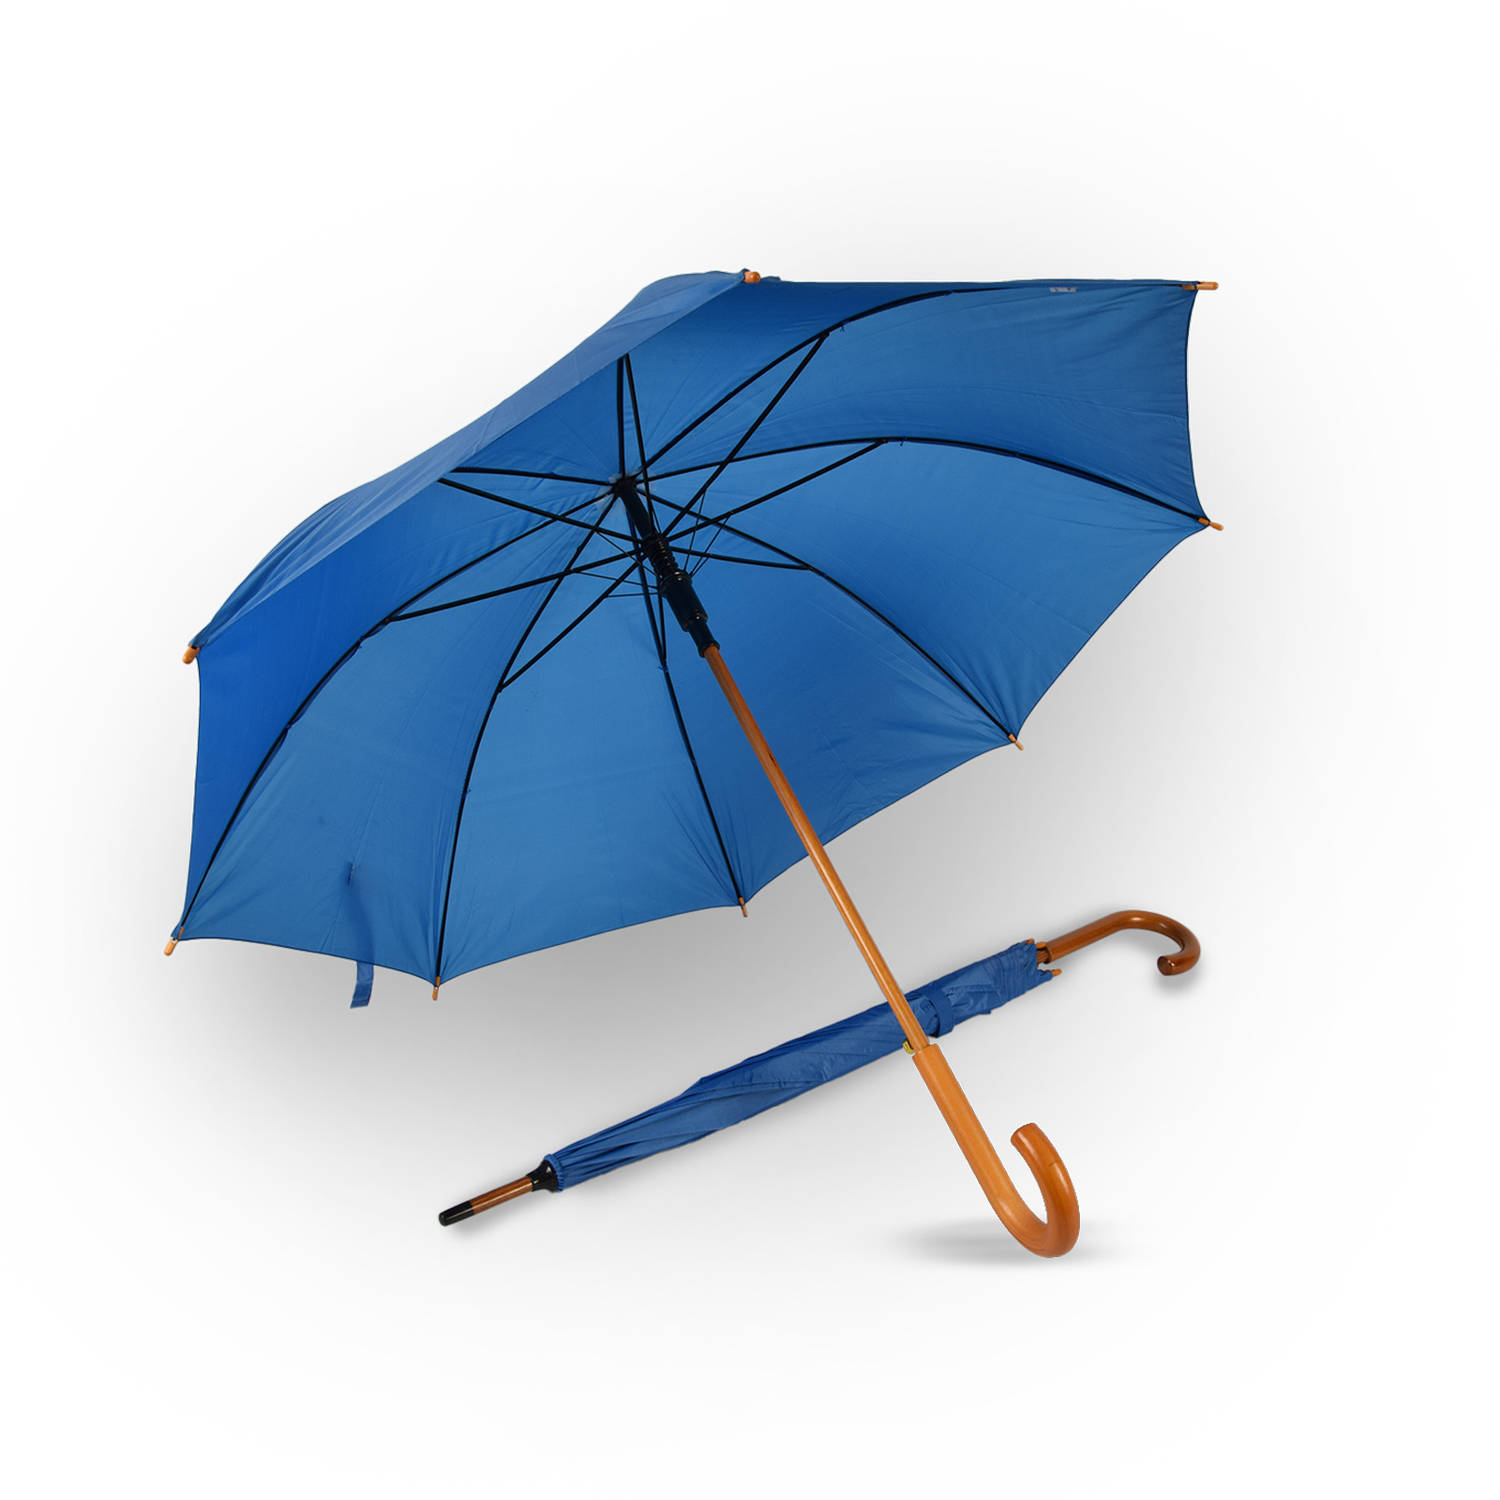 Set van 2 Automatische Opvouwbare Paraplu's | 102cm Diameter met Houten Look Handvat | Een Must-Have Blauwe Paraplu voor Regenachtige Dagen